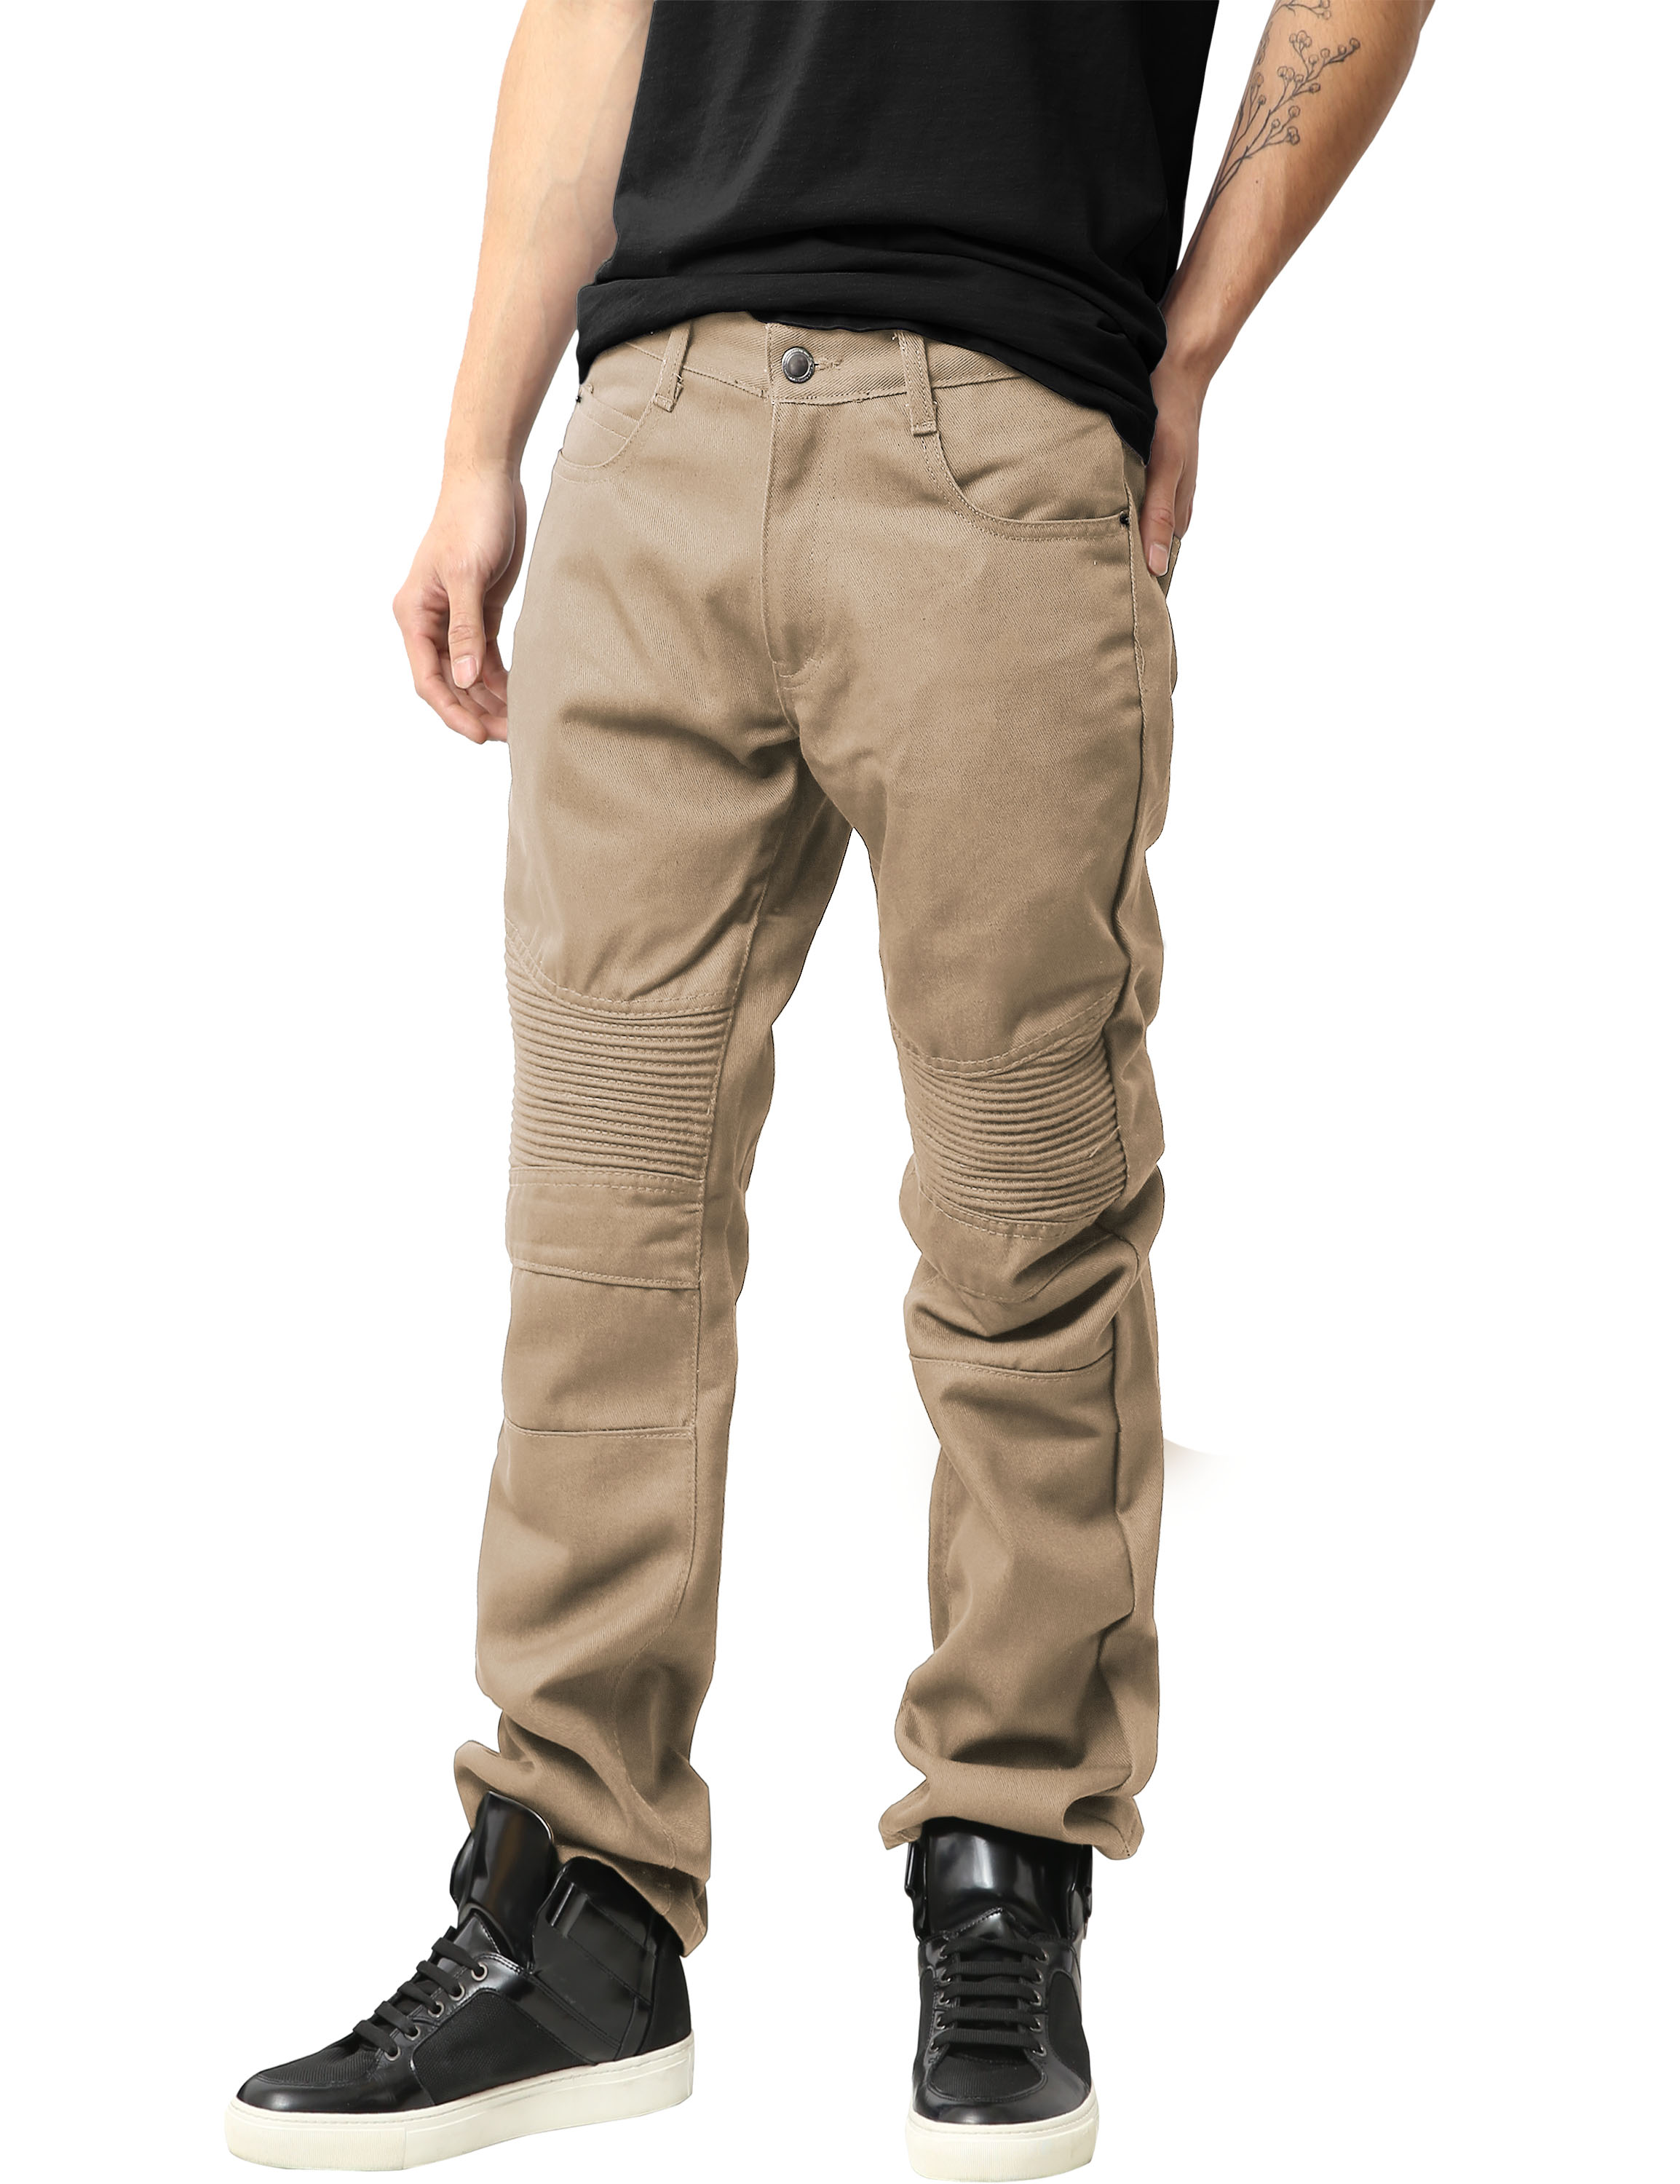 Ma Croix Mens Biker Jeans Slim Straight Fit Denim Distressed Zipper Pants - image 1 of 7